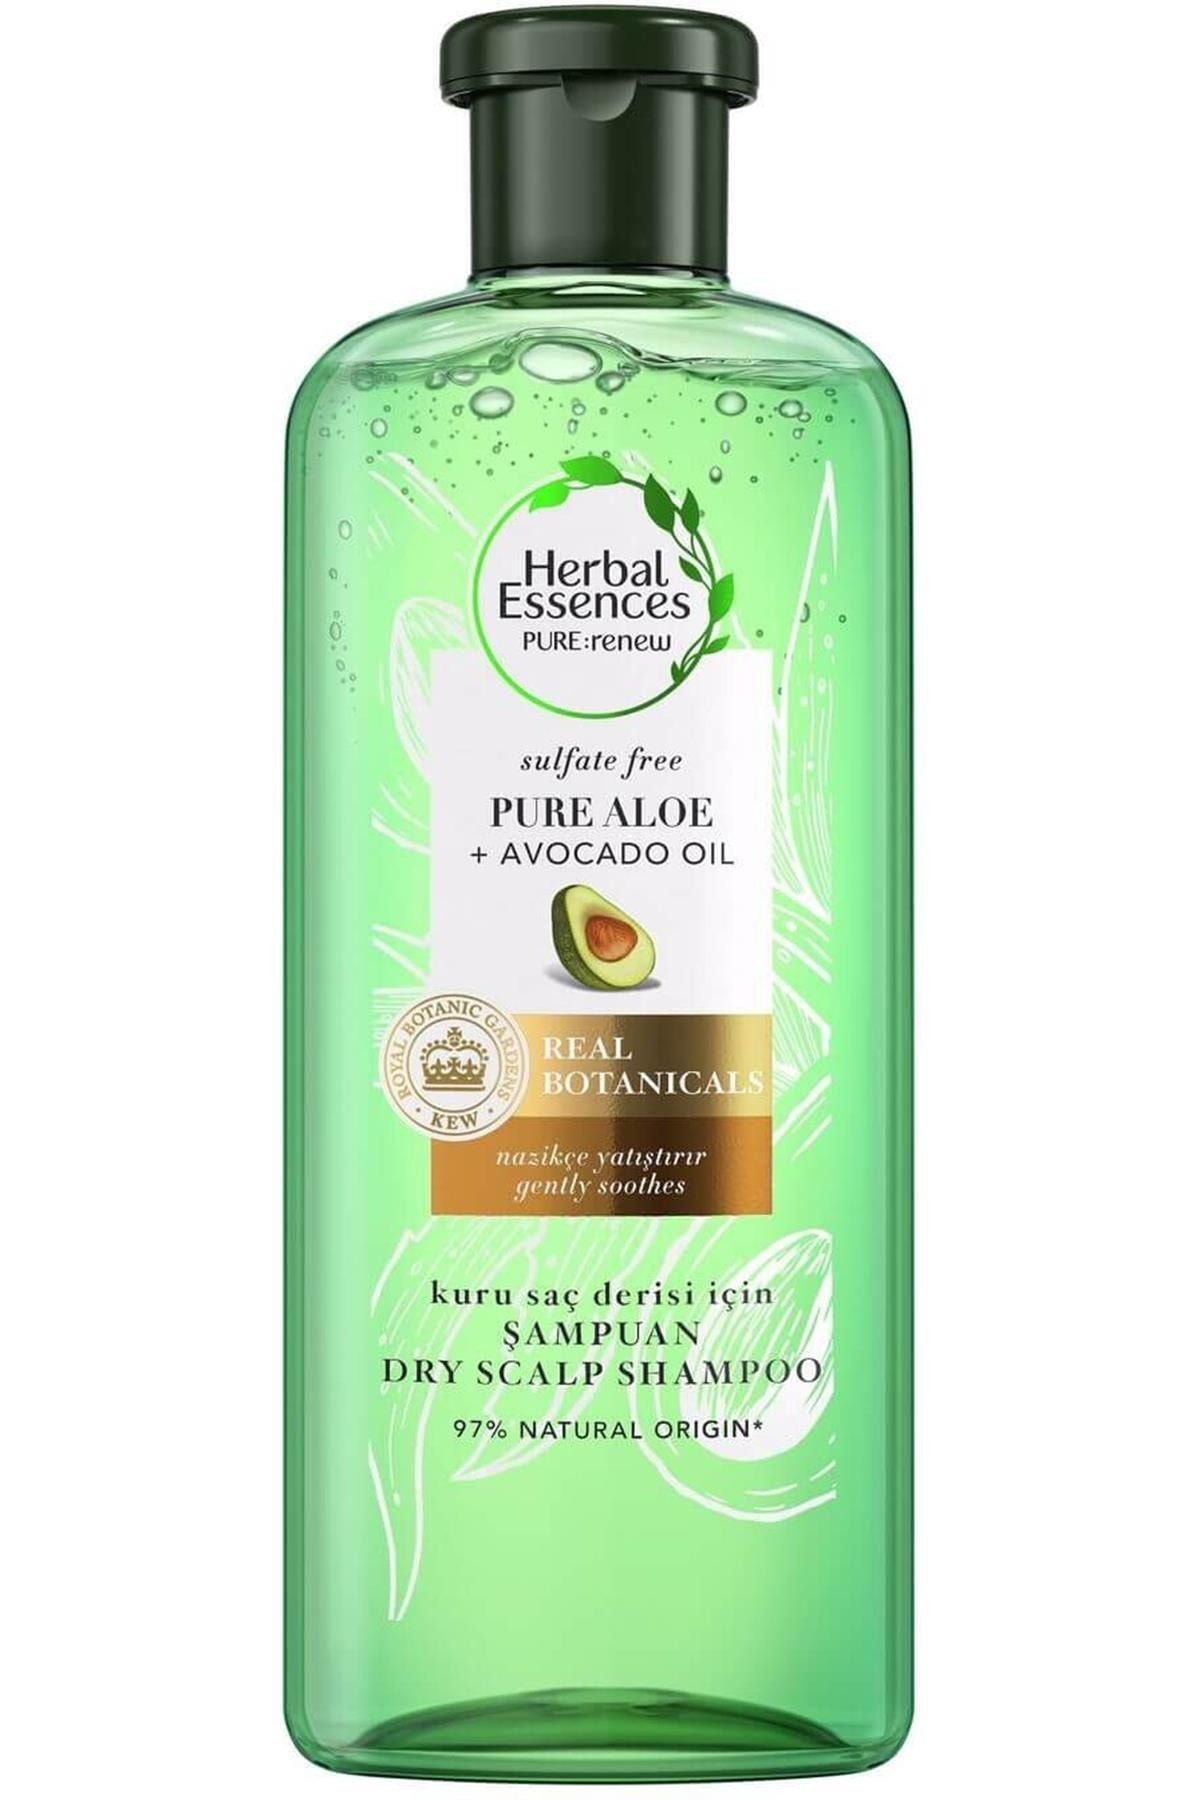 Herbal Essences (keyonline) Sülfatsız Aloe Ve Avokado 0narıcı Süper Şampuan 380ml.